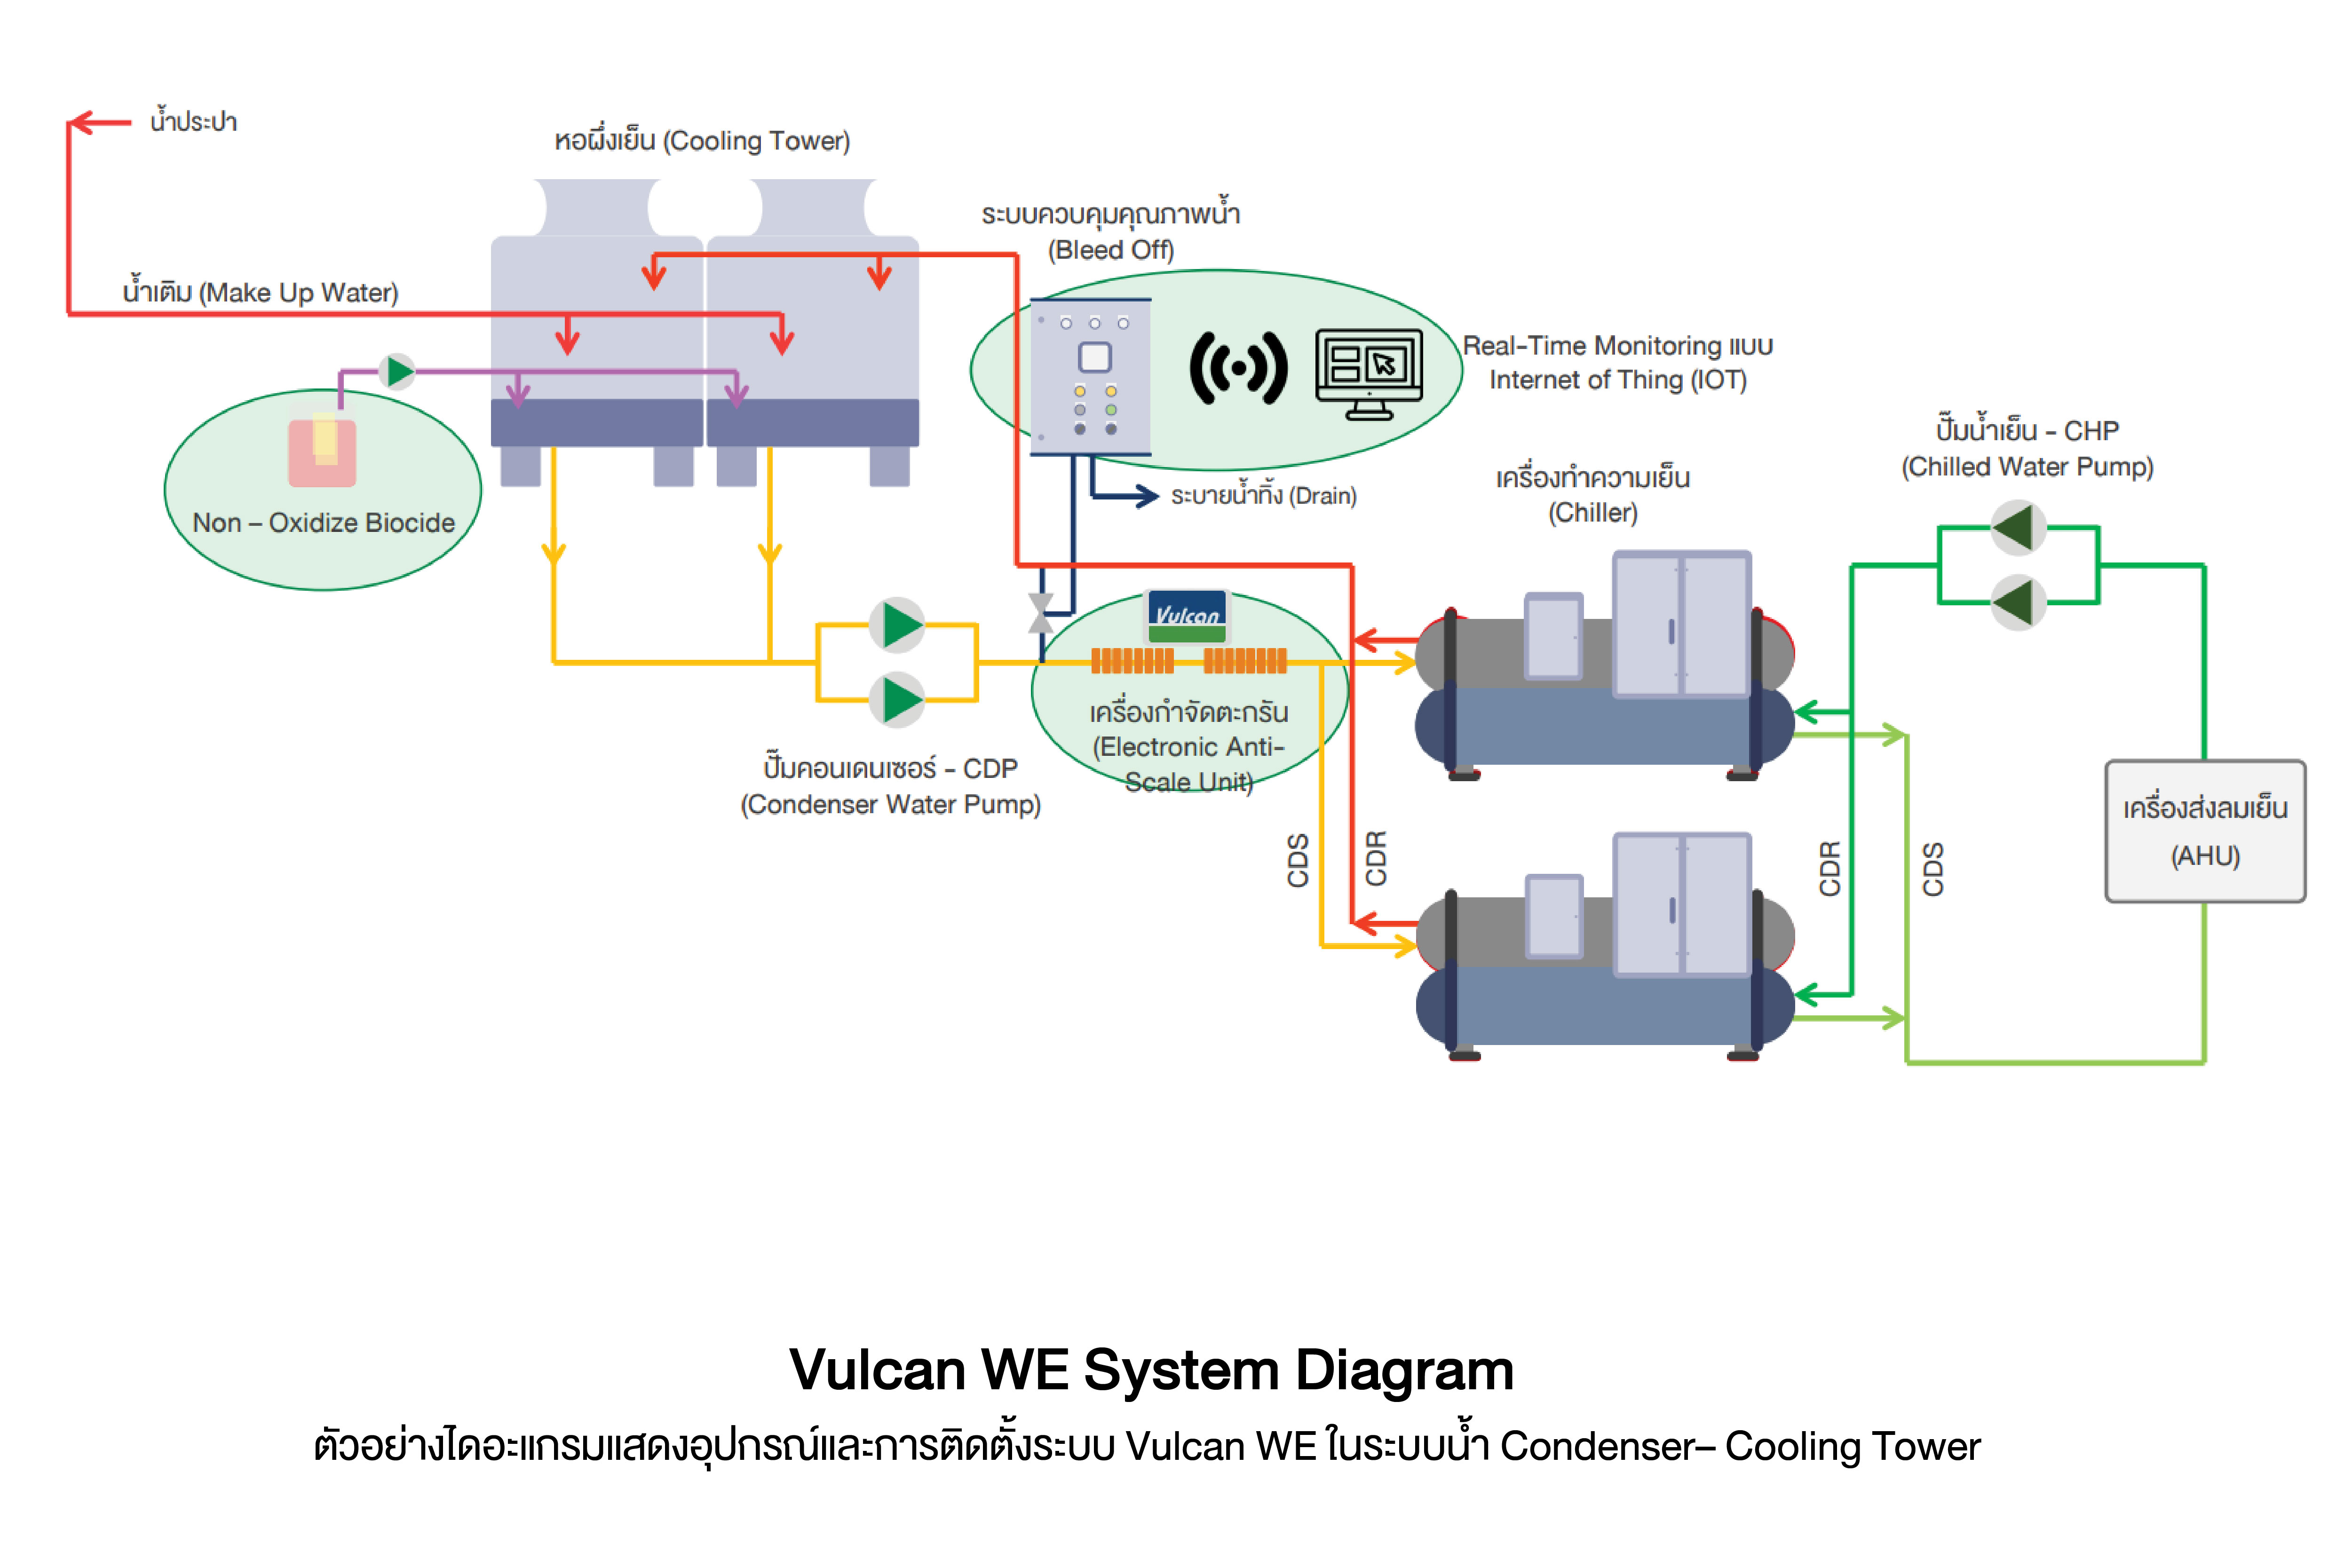 ตัวอย่างไดอะแกรมแสดงอุปกรณ์และการติดตั้งระบบ Vulcan WE